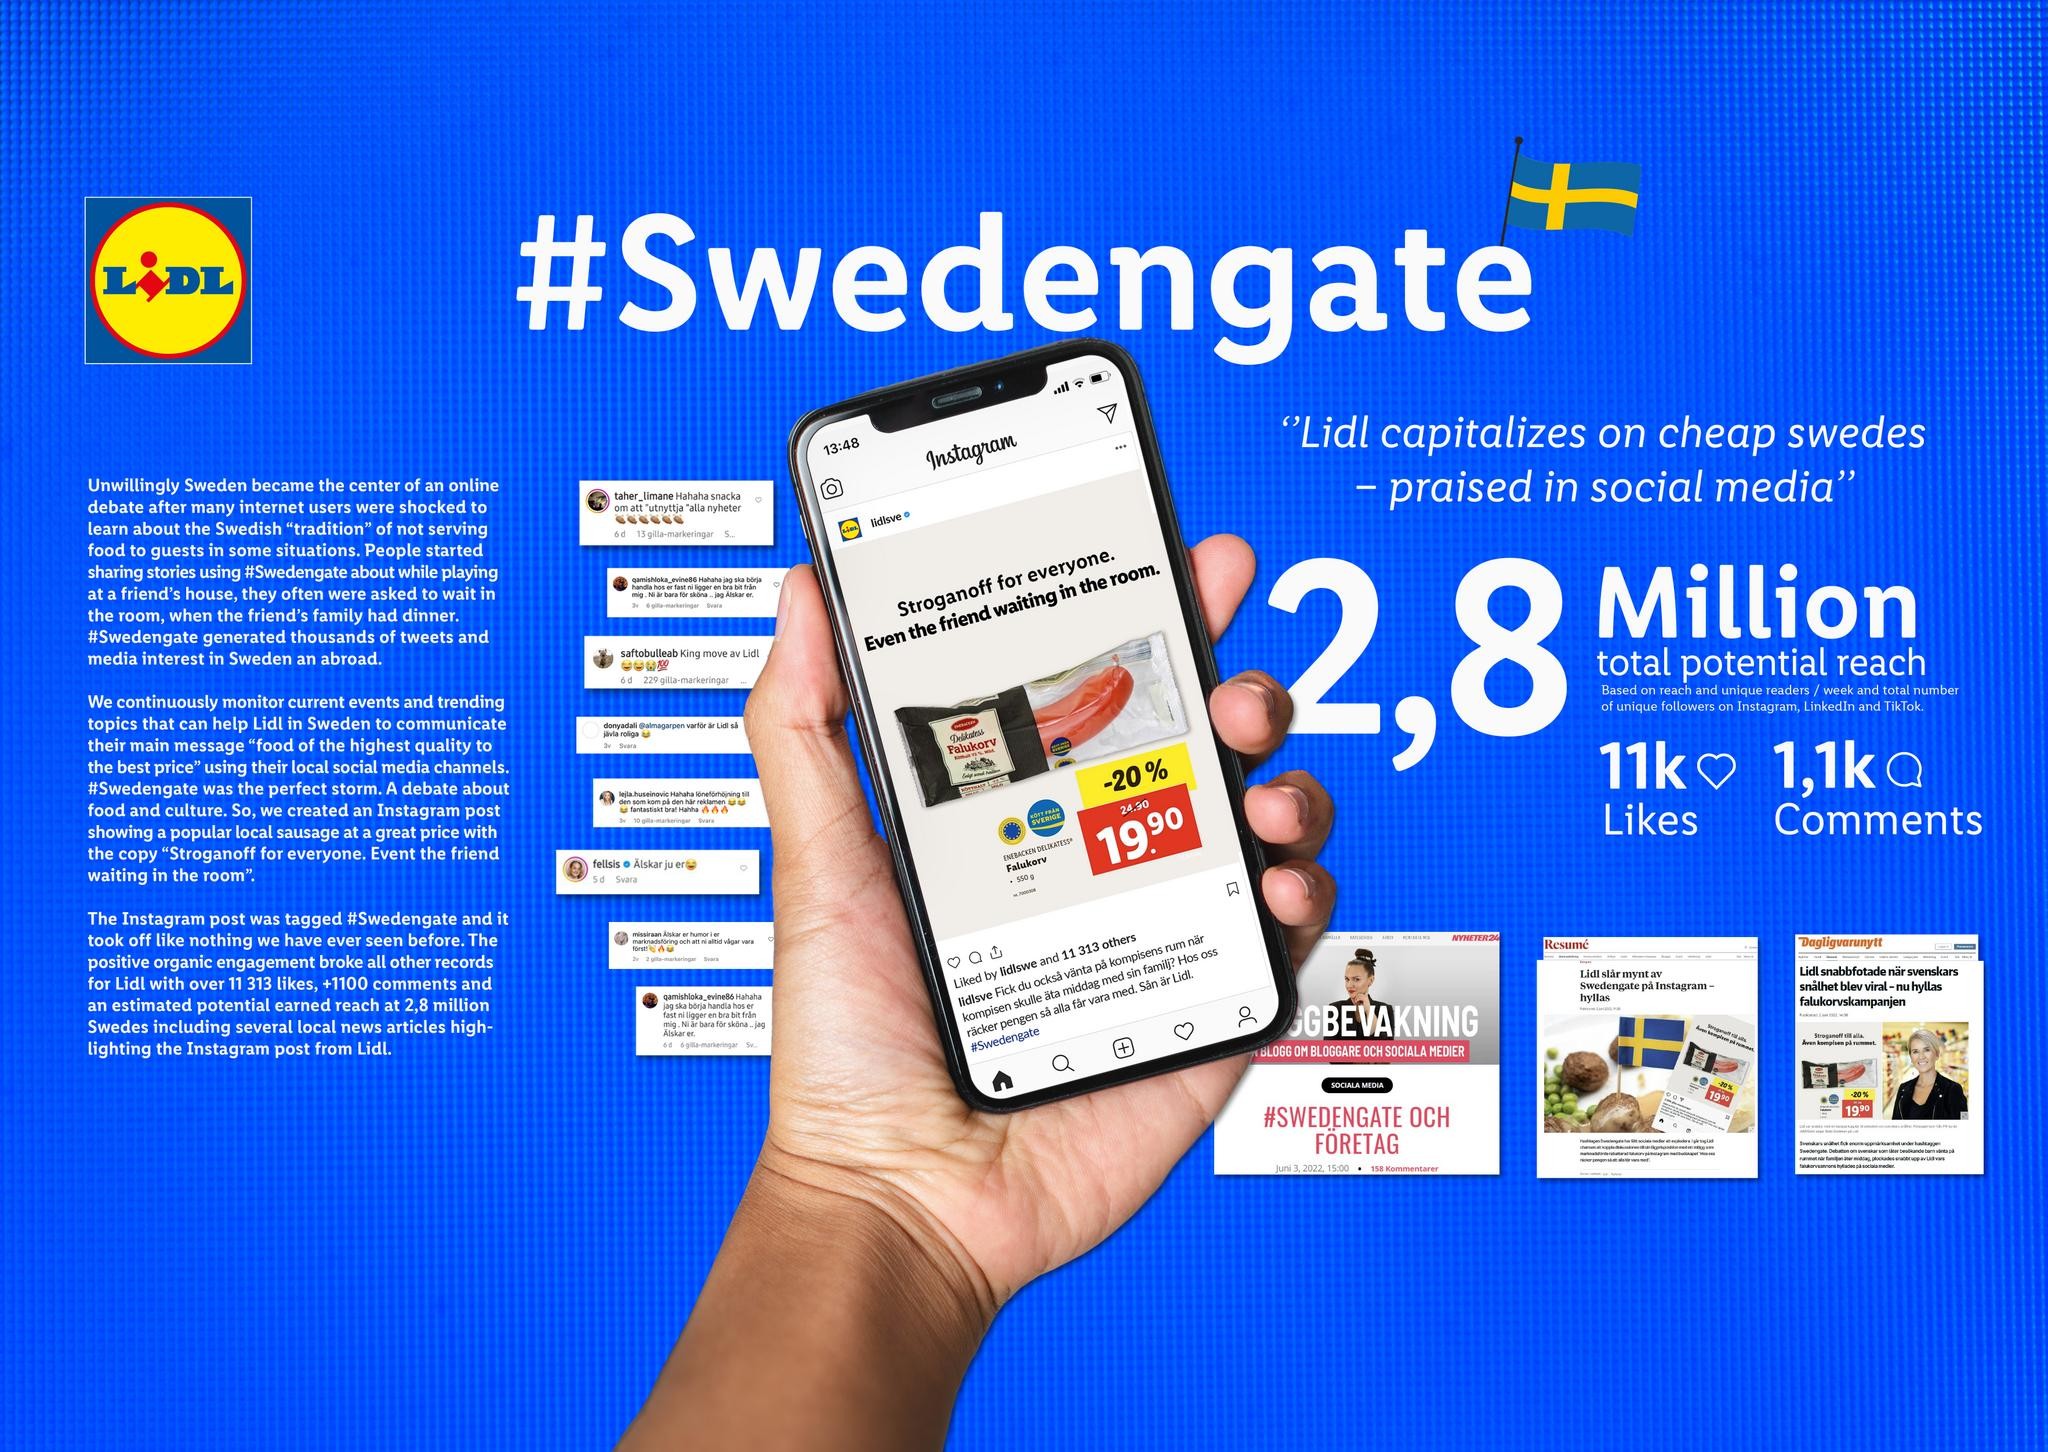 Swedengate